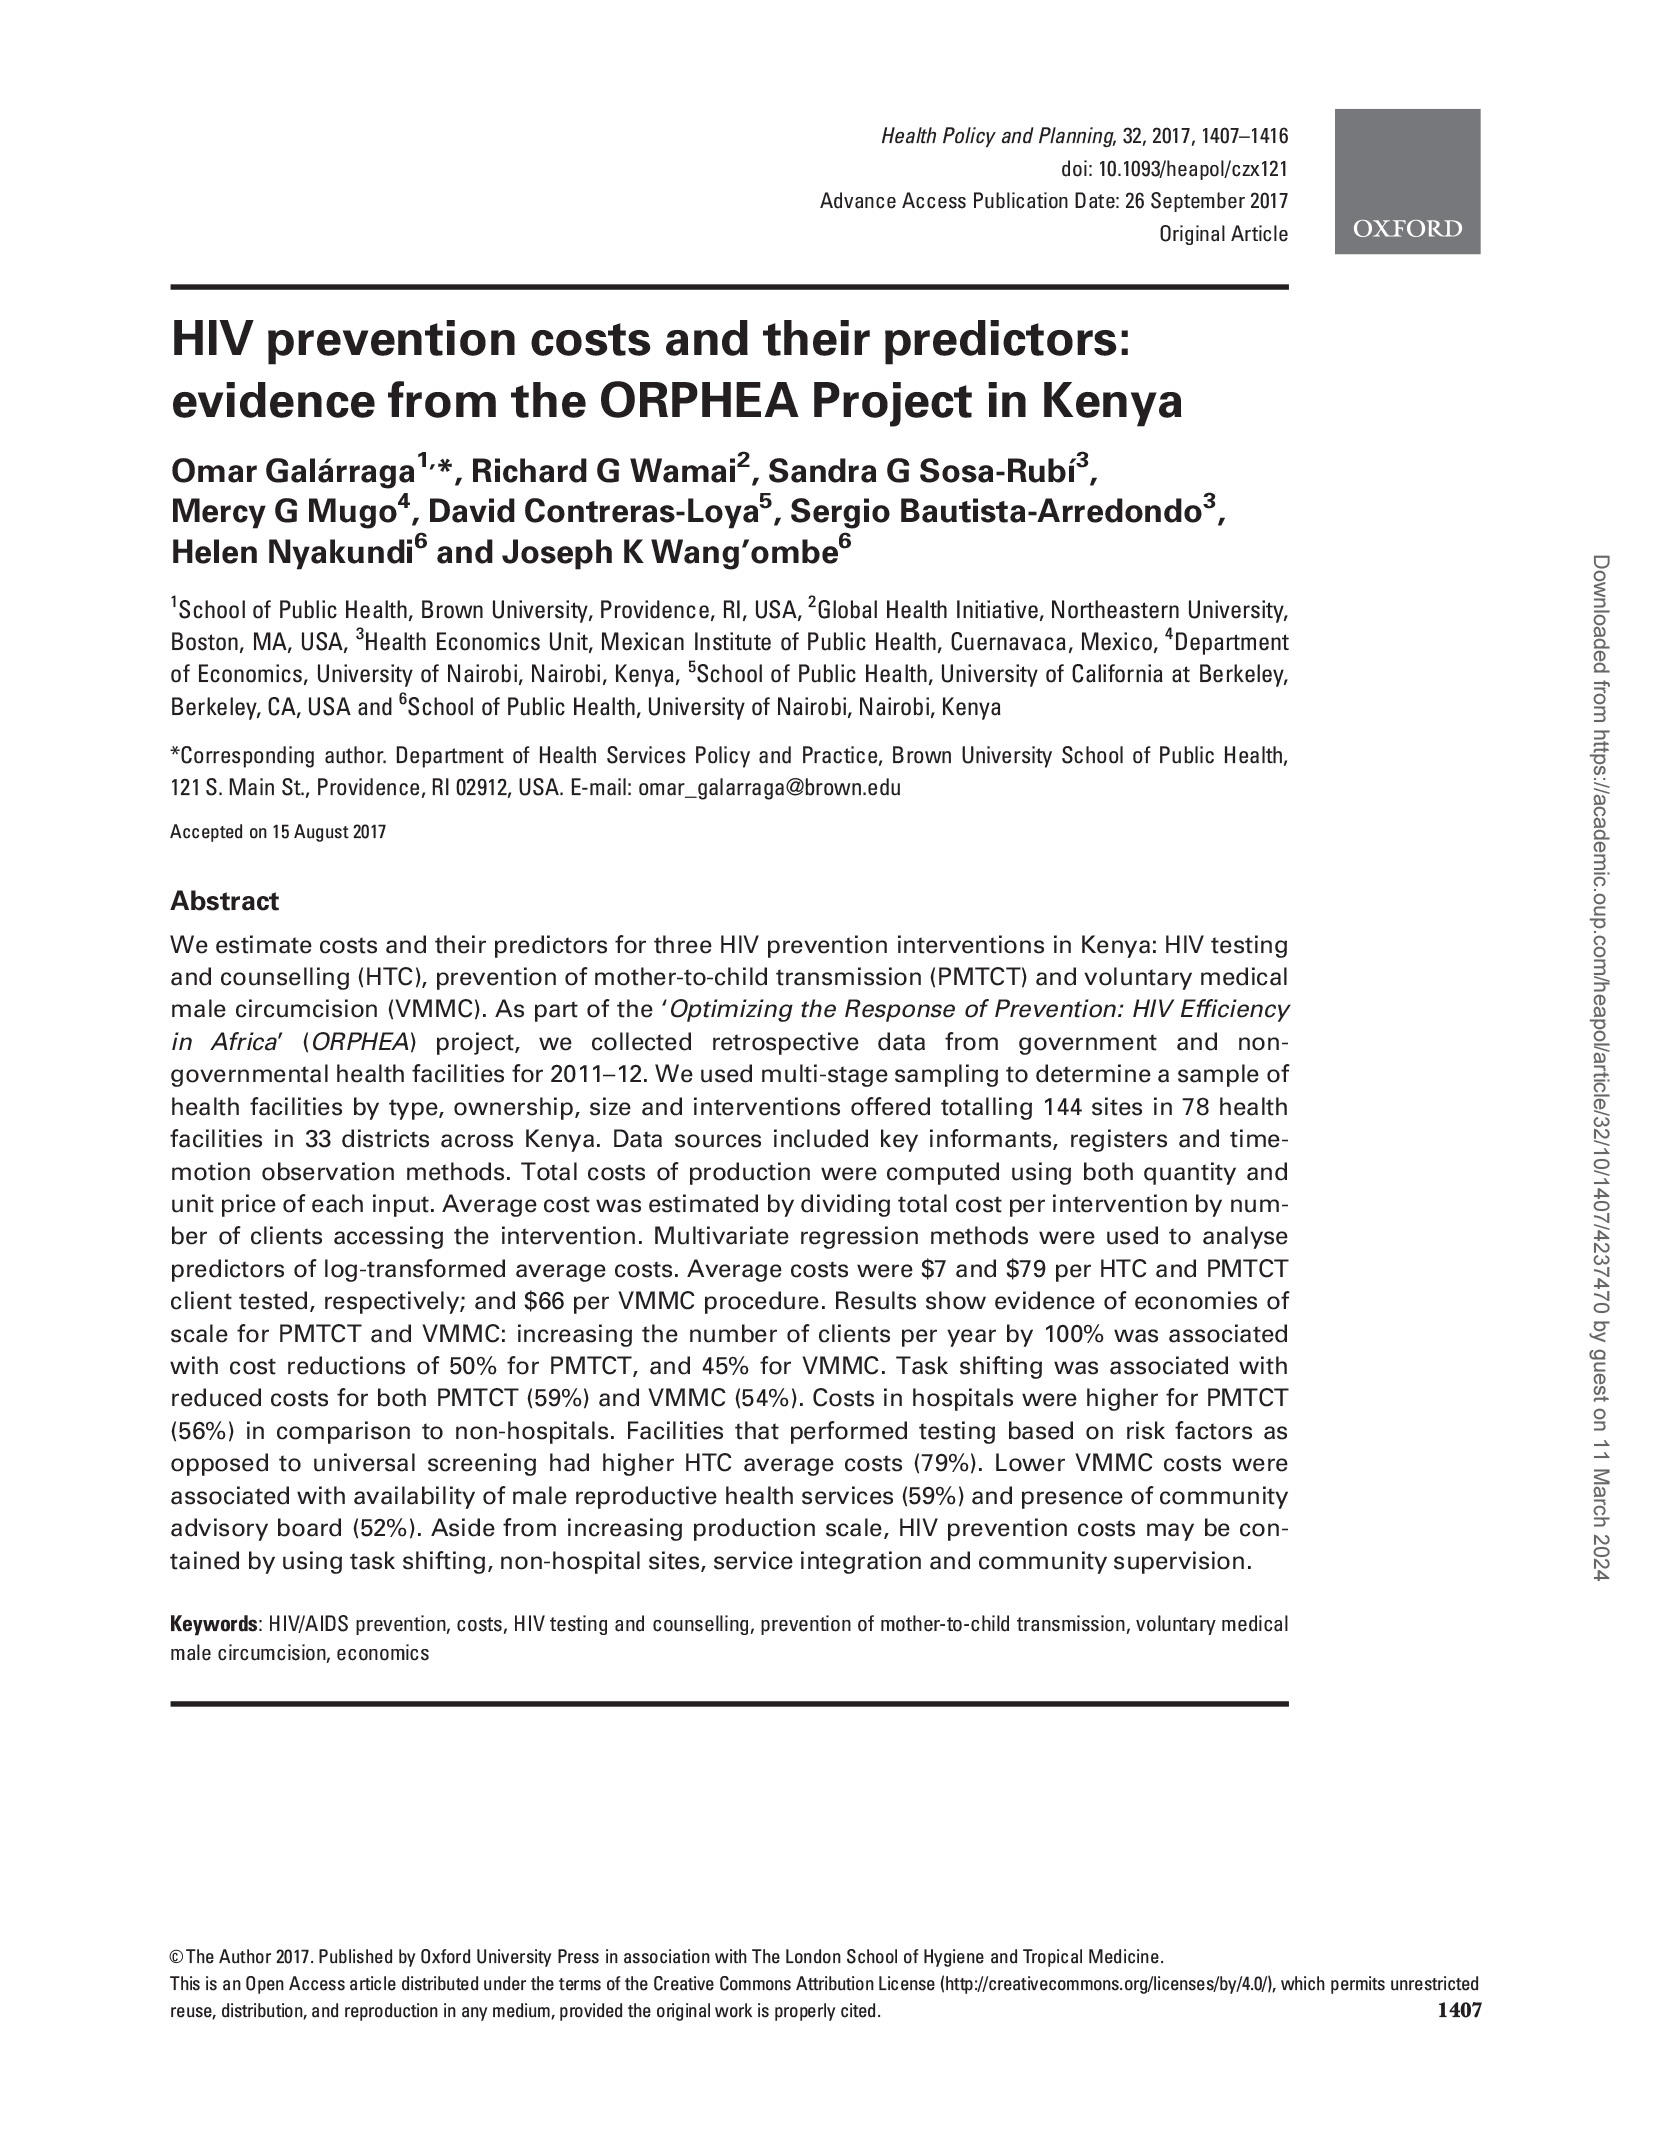 Les coûts de la prévention du VIH et leurs prédicteurs : Evidence from the ORPHEA Project in Kenya - couverture